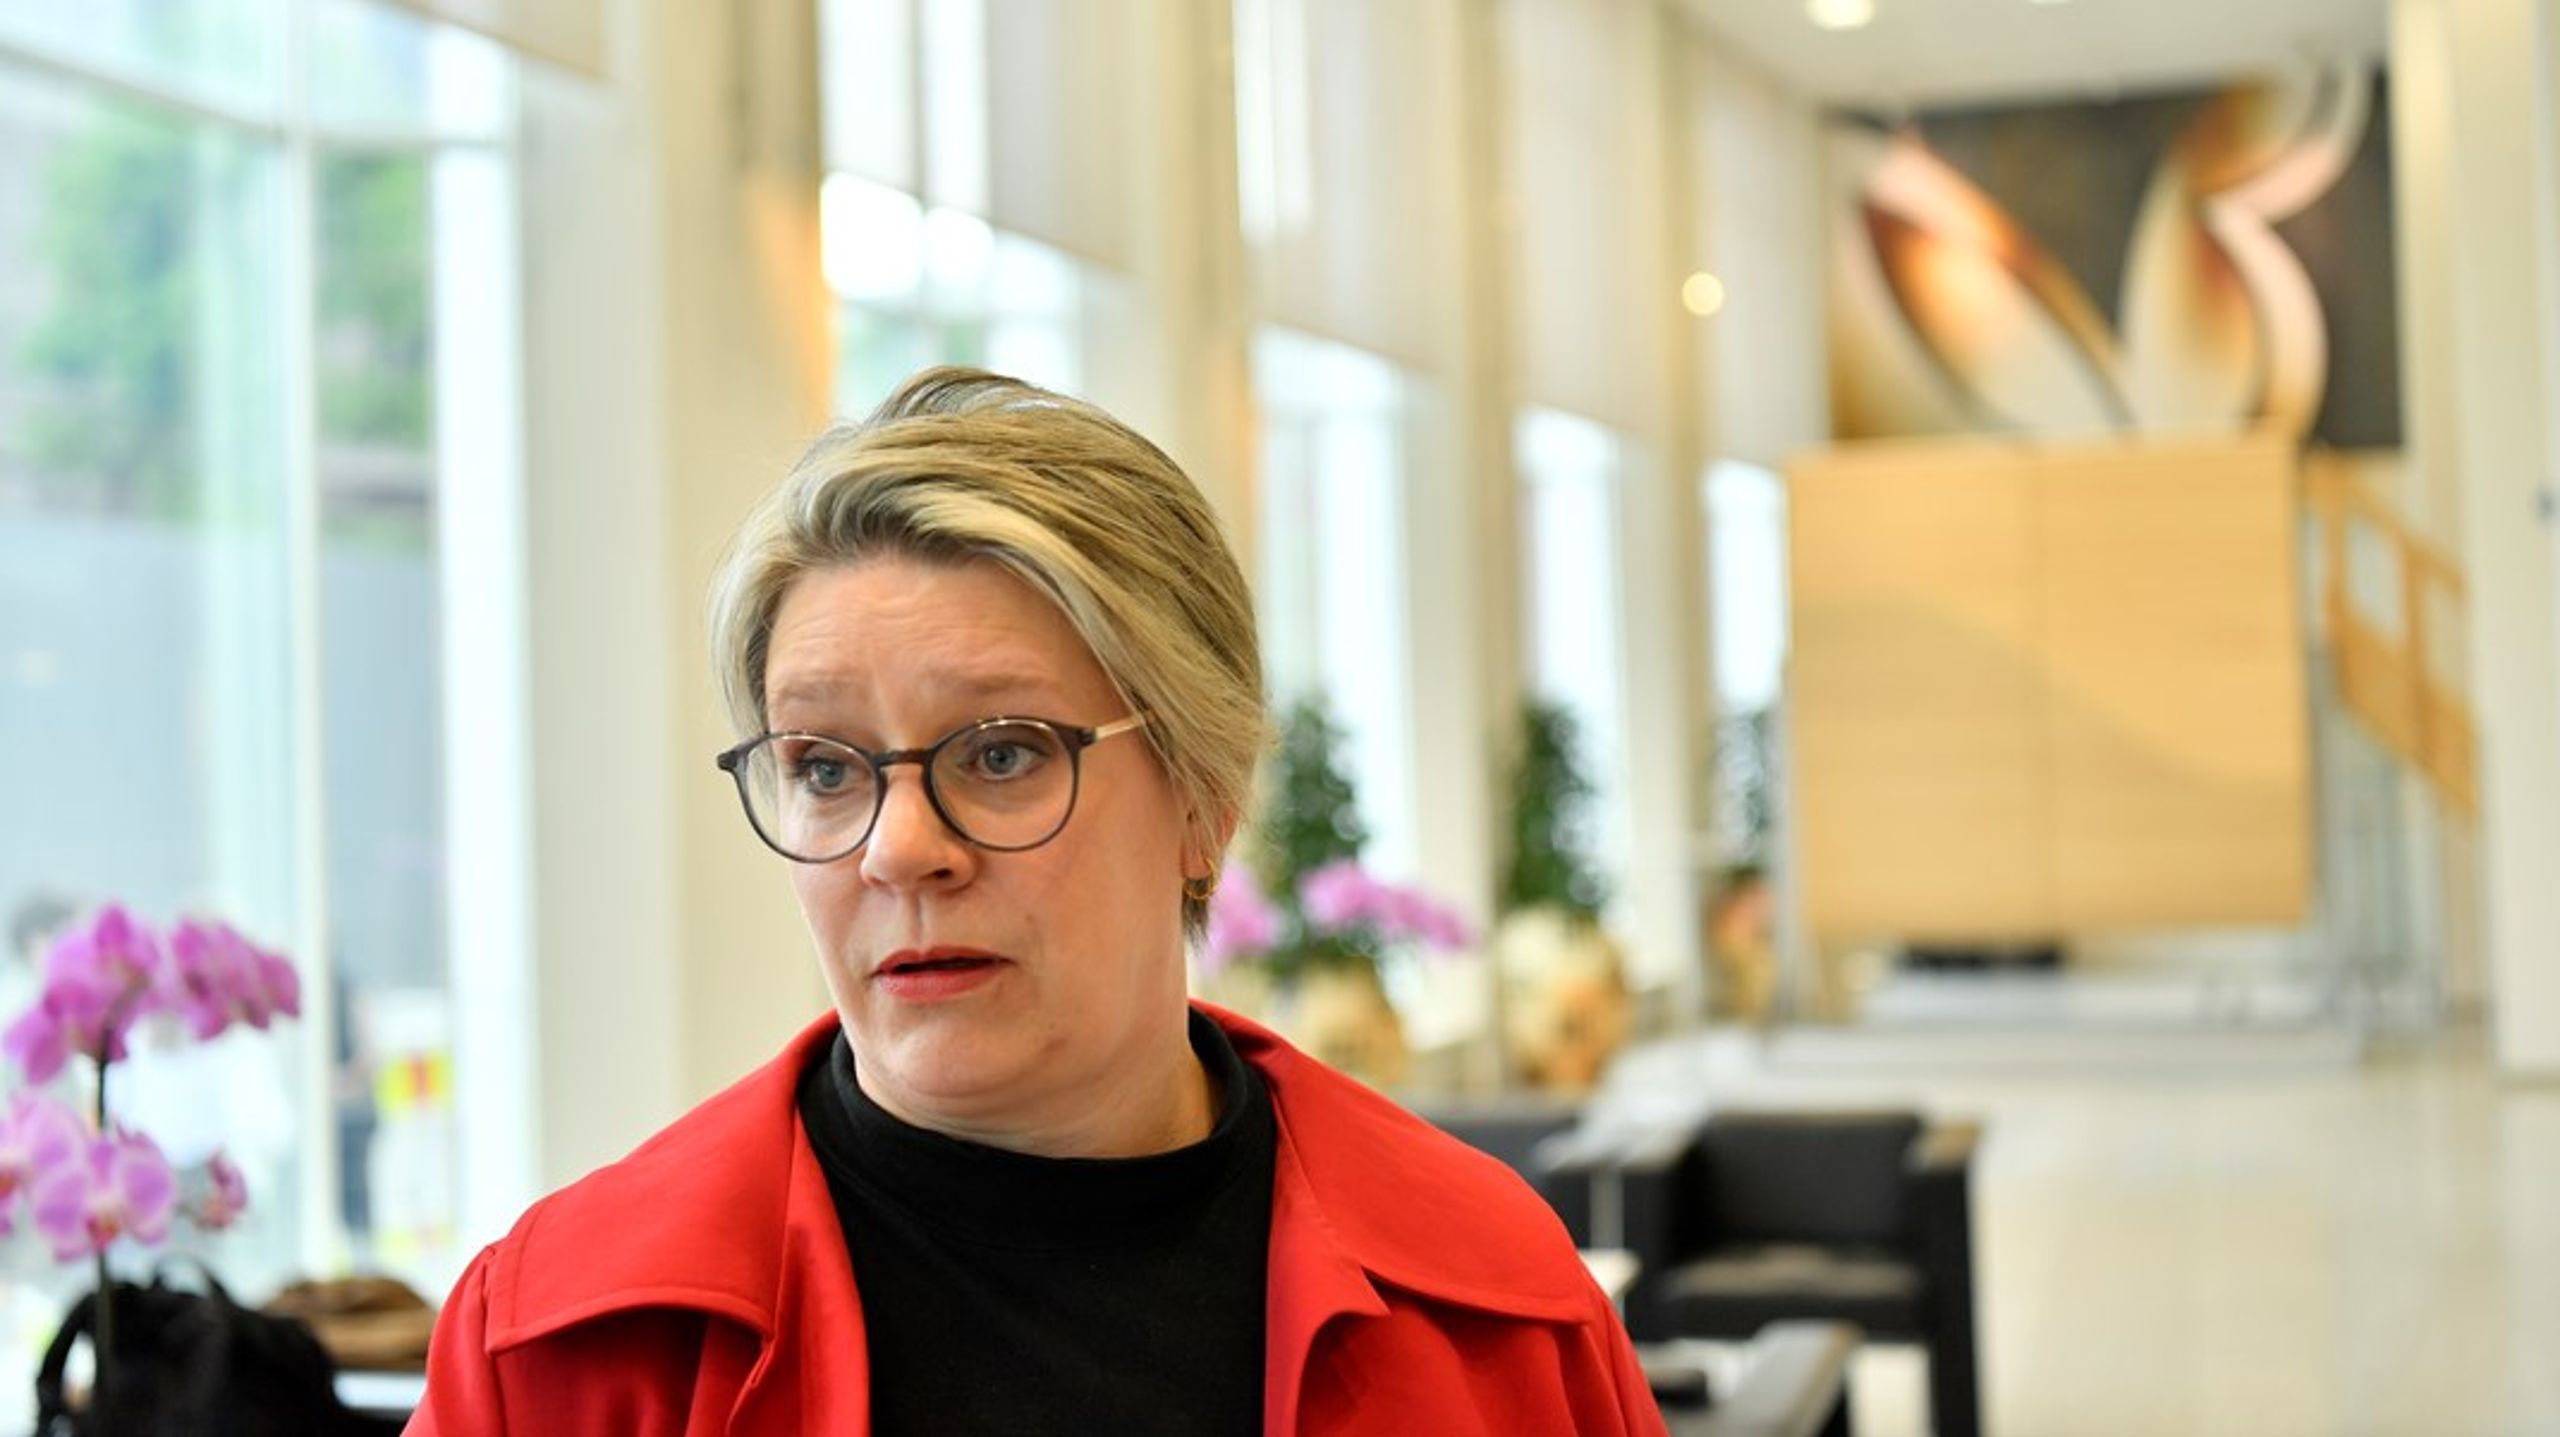 Arbeids- og inkluderingsminister Marte Mjøs Persen (Ap) mener at arbeidslinjen bør styrkes og videreutvikles.